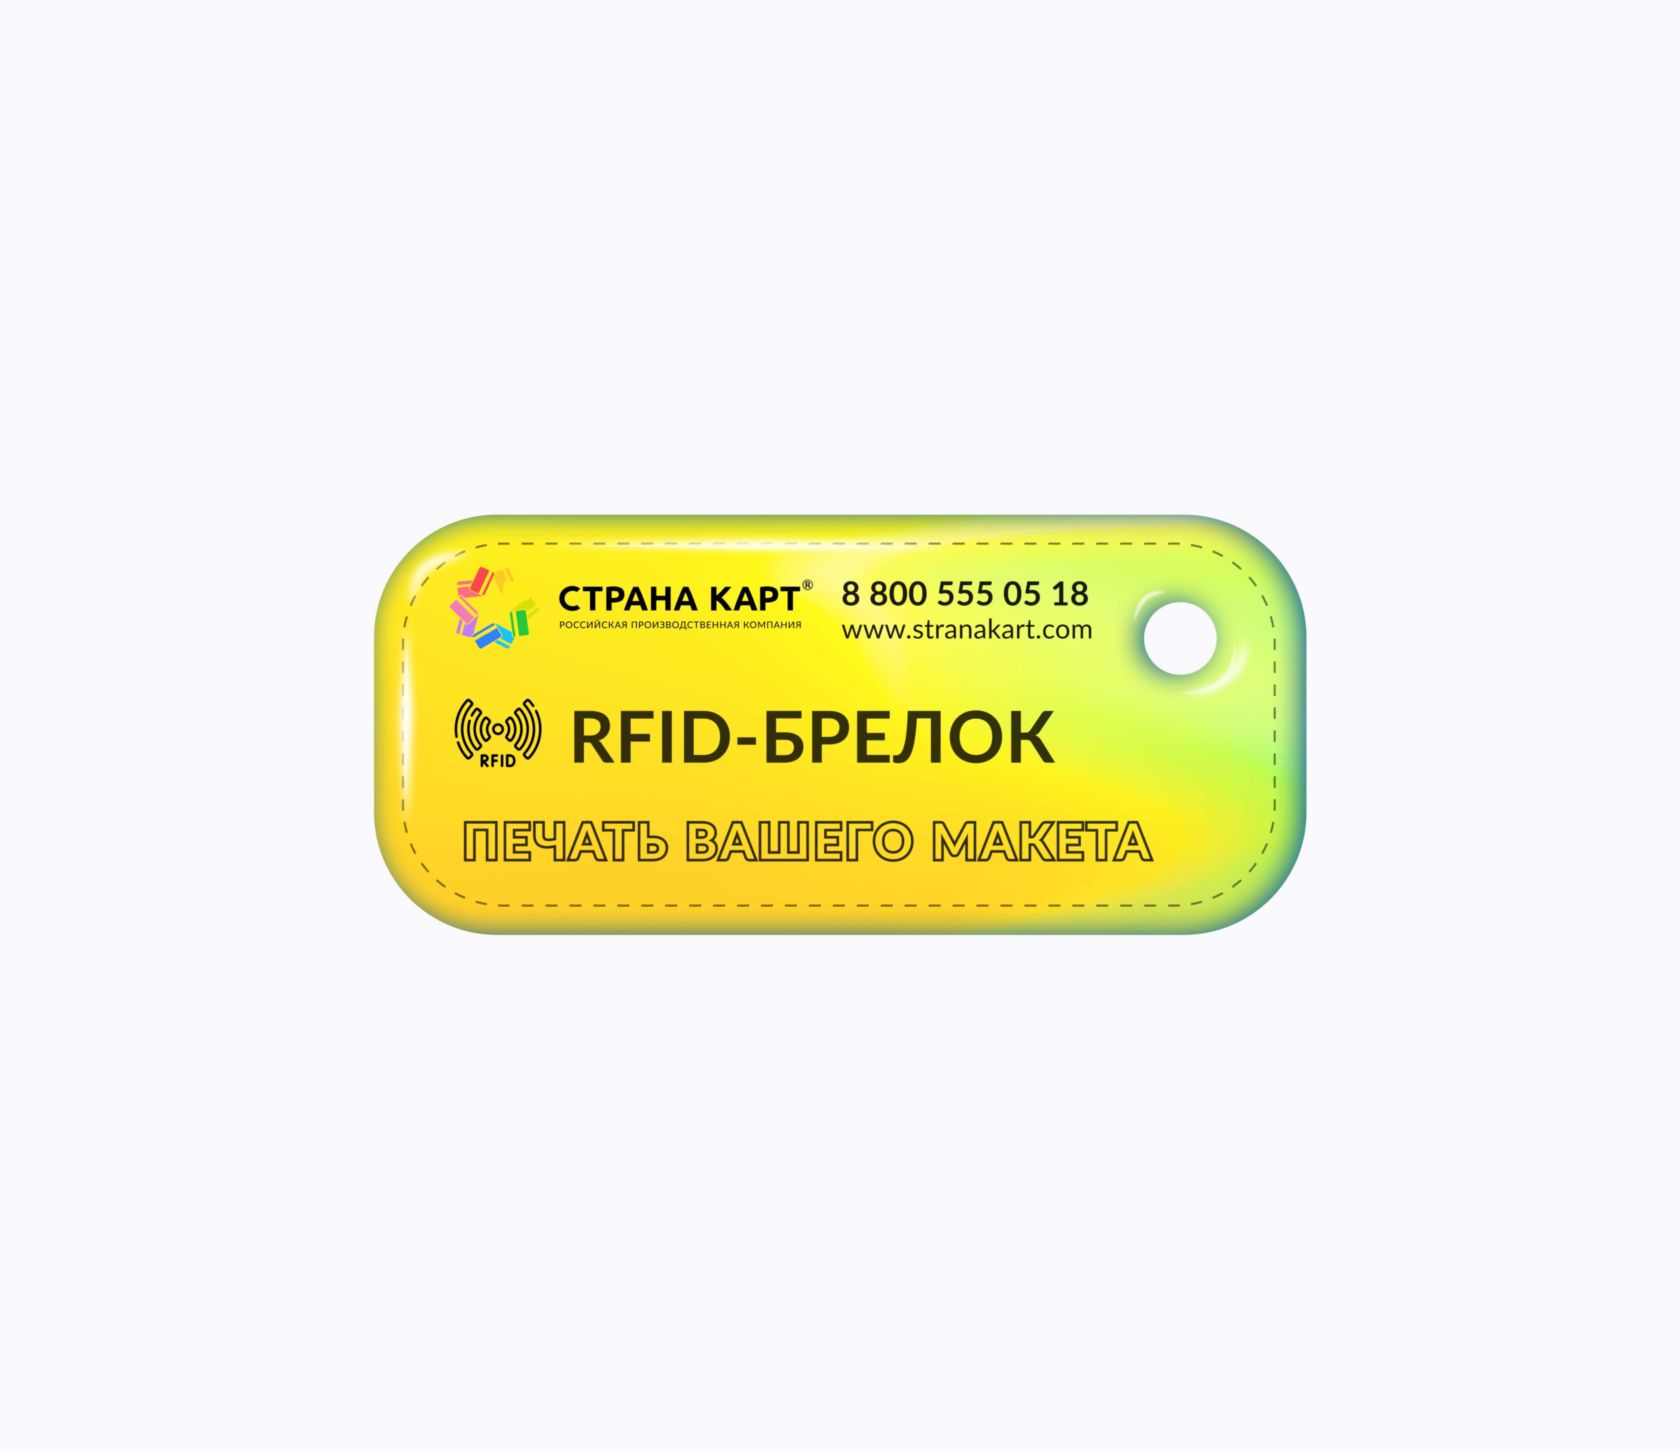 Прямоугольные Мини RFID-брелоки NEOKEY® с чипом для аквапарков RFID-брелоки NEOKEY® с чипом для аквапарков